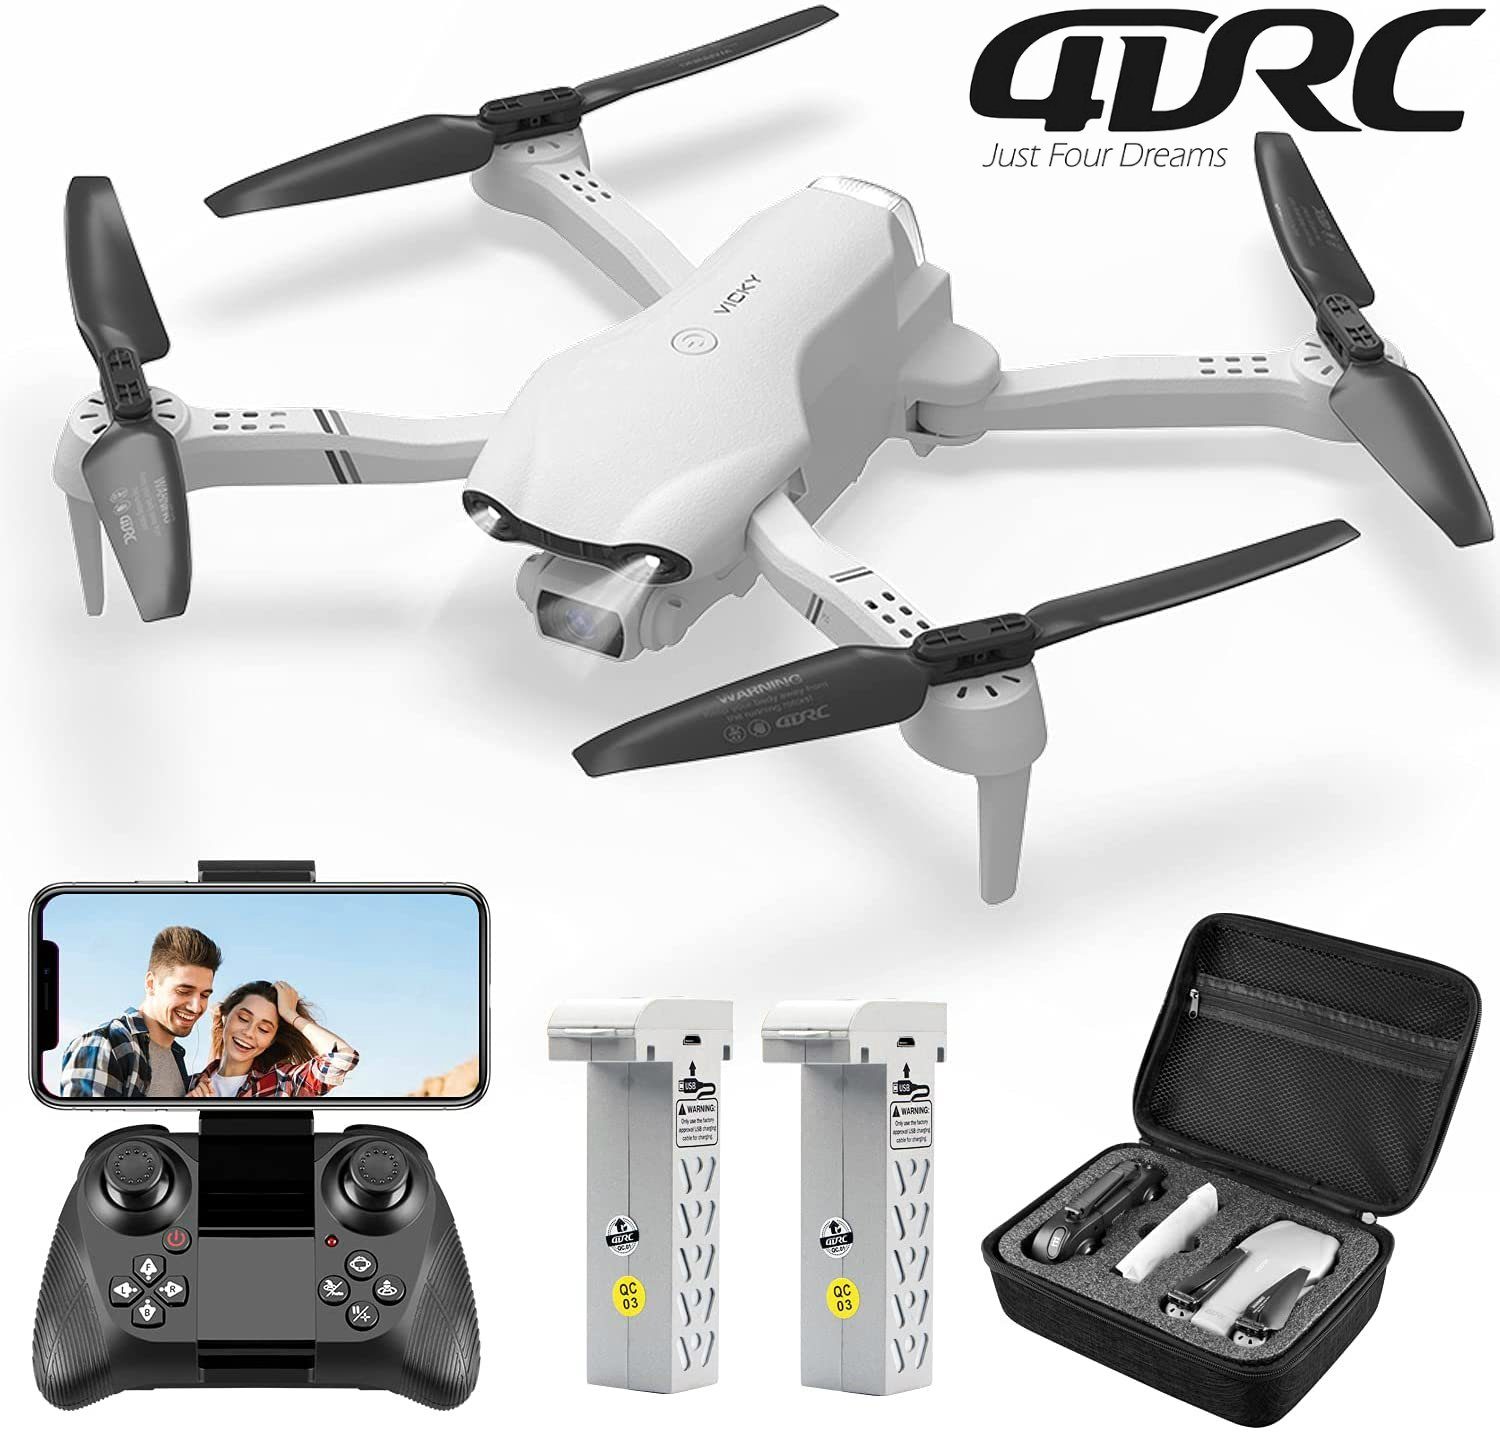 4DRC für Kinder & Anfänger, klappbarer Quadcopter Spielzeug-Drohne (1080P HD, F10, 32 Minuten Flugzeit, FPV-Live-Video, automatischer Schwebeflug) Weiß